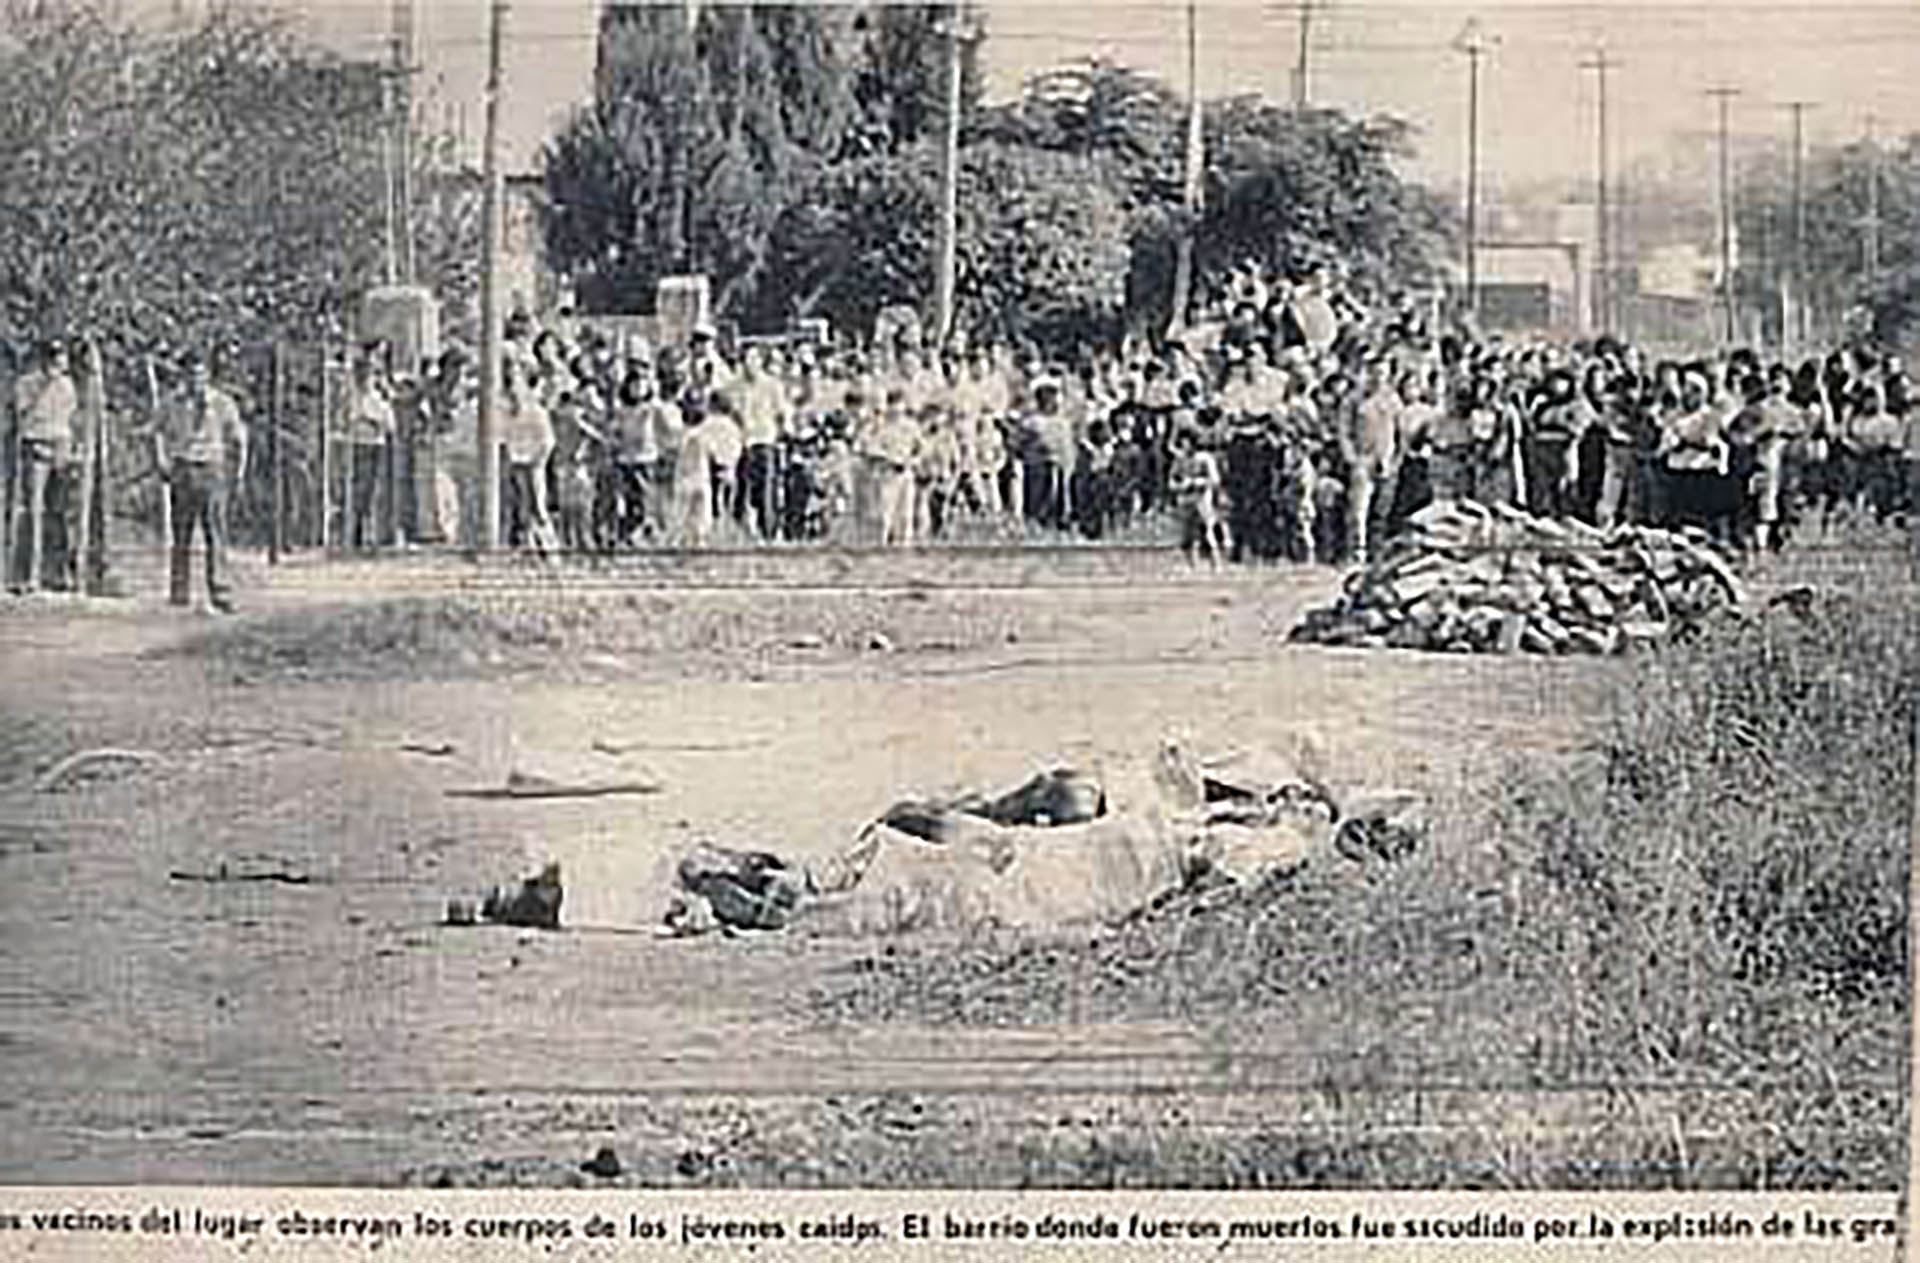 Las víctimas fueron Héctor Lencina, Héctor Flores, Aníbal Benítez, Germán Gómez, los hermanos Eduardo y Alfredo Díaz, Gladys Martínez y Rubén “Cacho” Maguna